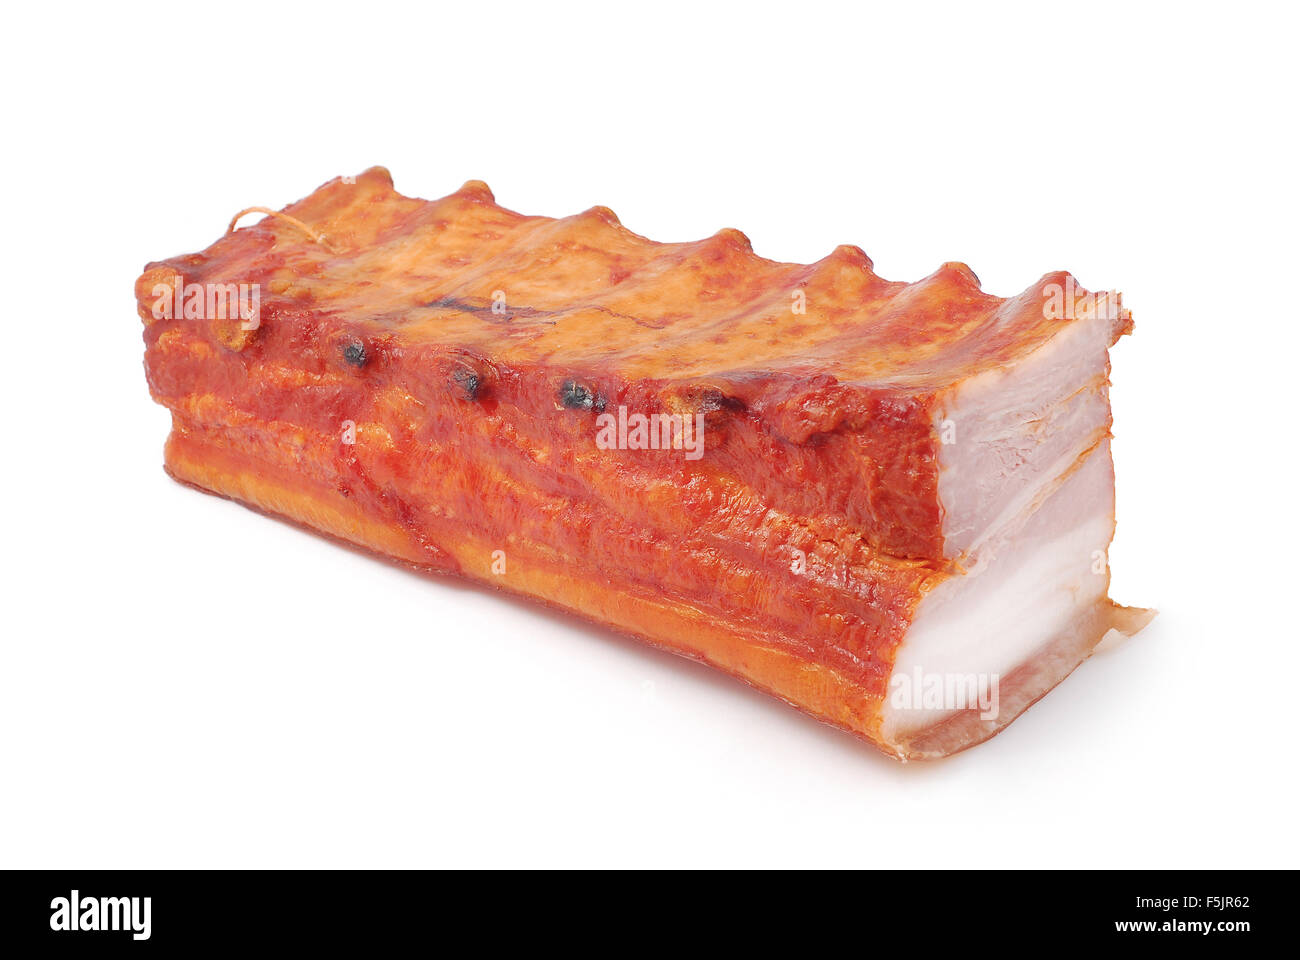 smoked pork ribs Stock Photo